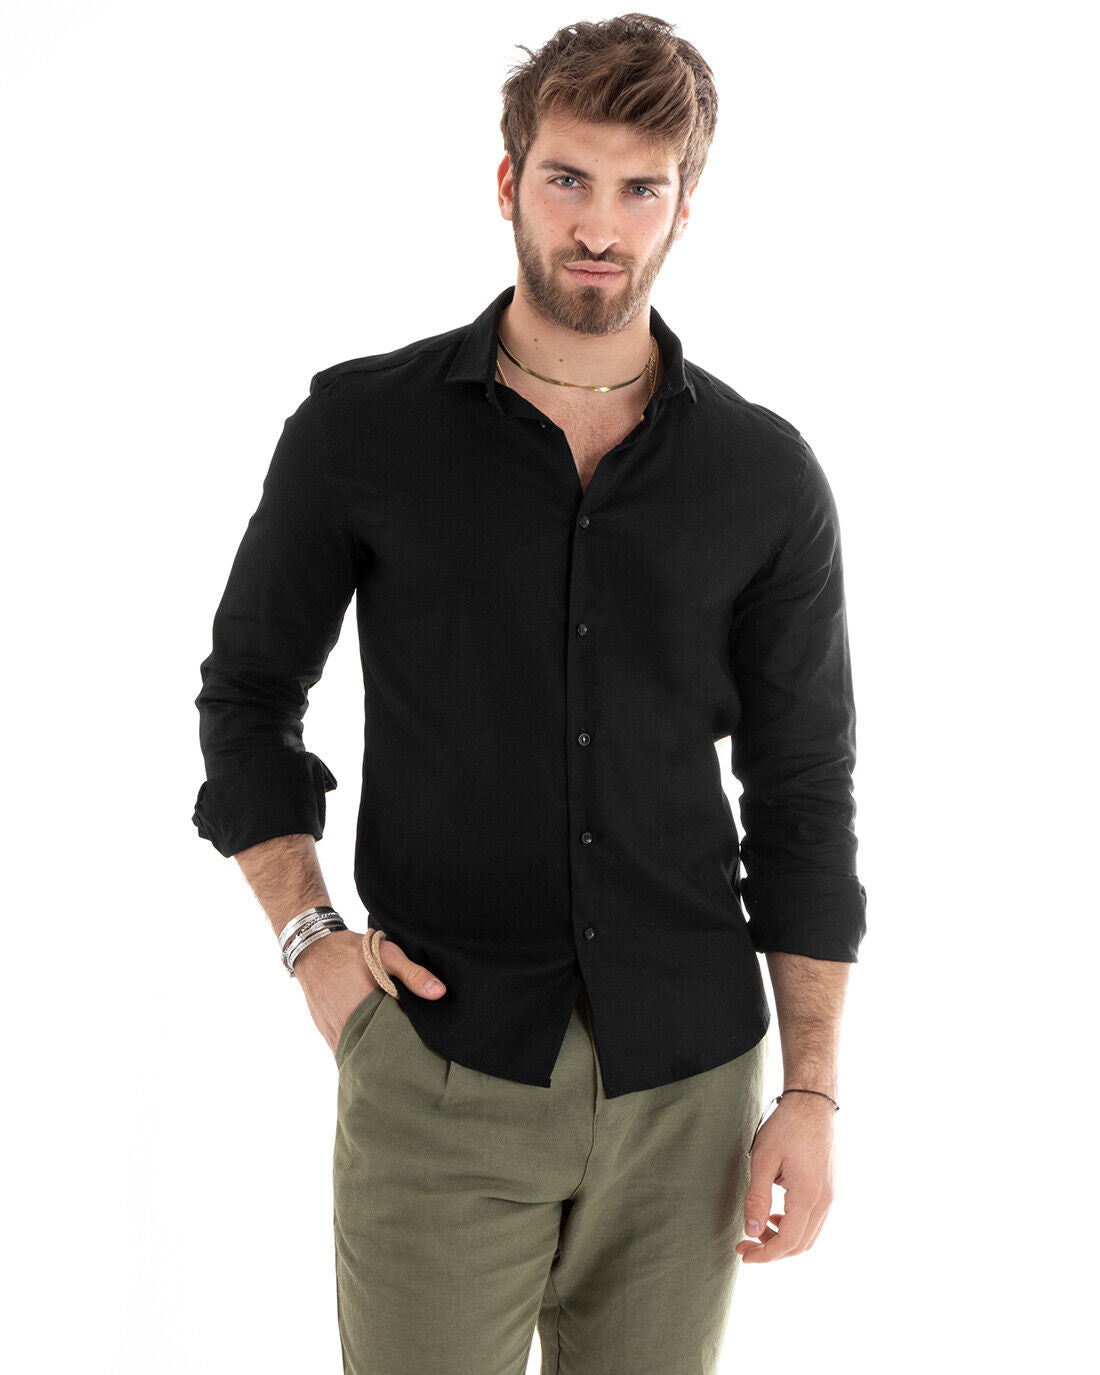 Camicia Uomo Con Colletto Tinta Unita Nera Lino Manica Lunga Casual Sartoriale GIOSAL-C2715A